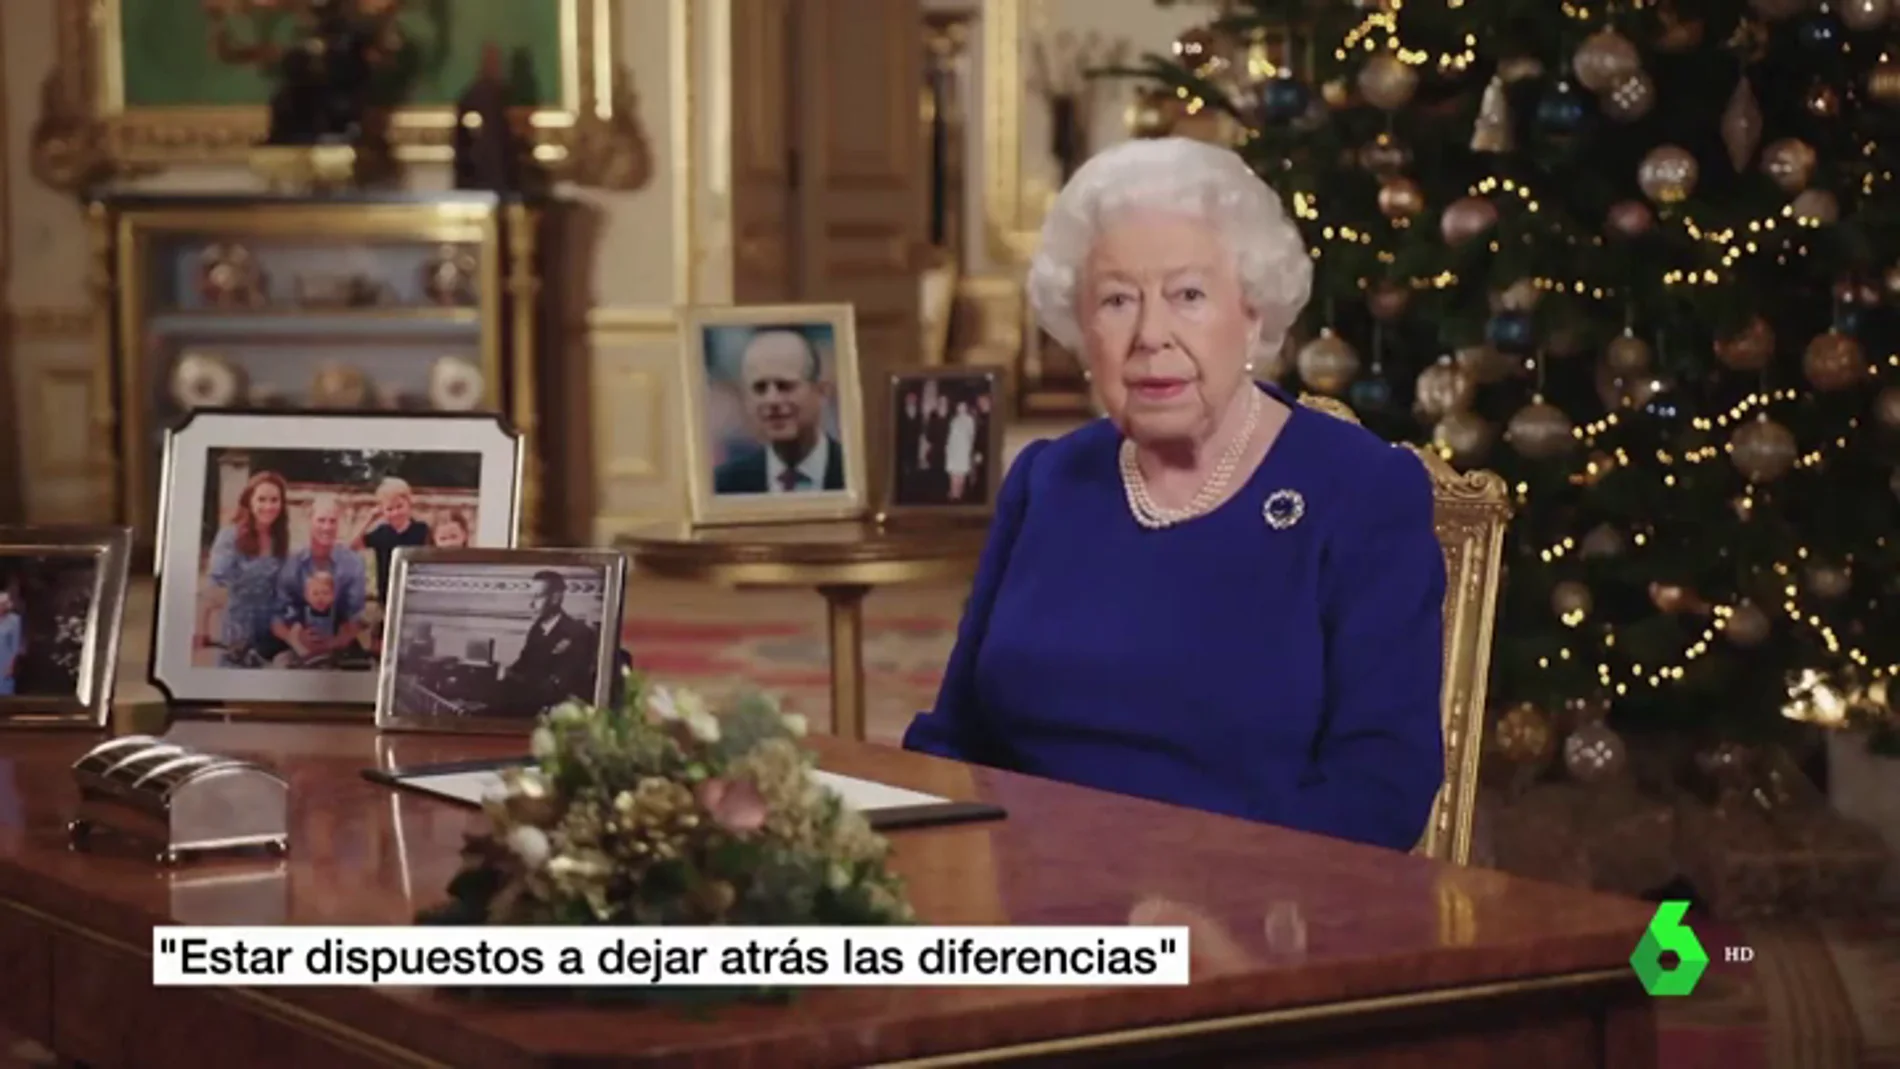   La reina Isabel II llama a la "reconciliación" tras un año "lleno de obstáculos" en Reino Unido